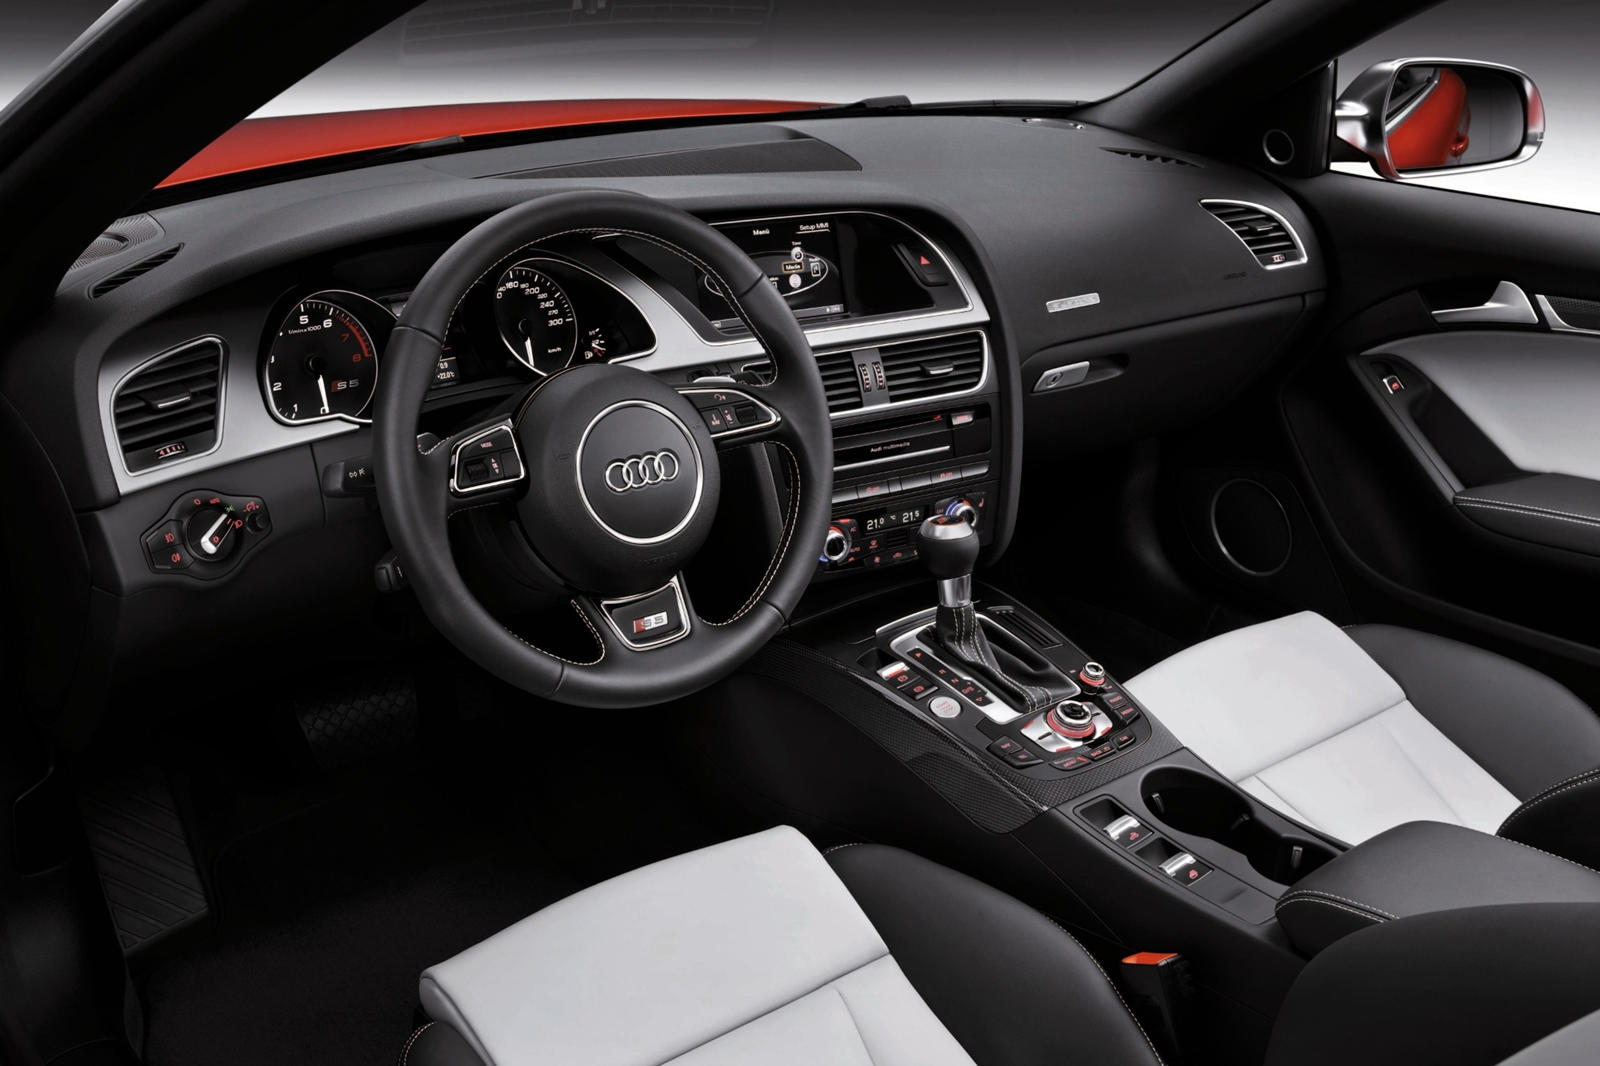 2015 Audi S5 Convertible Dashboard